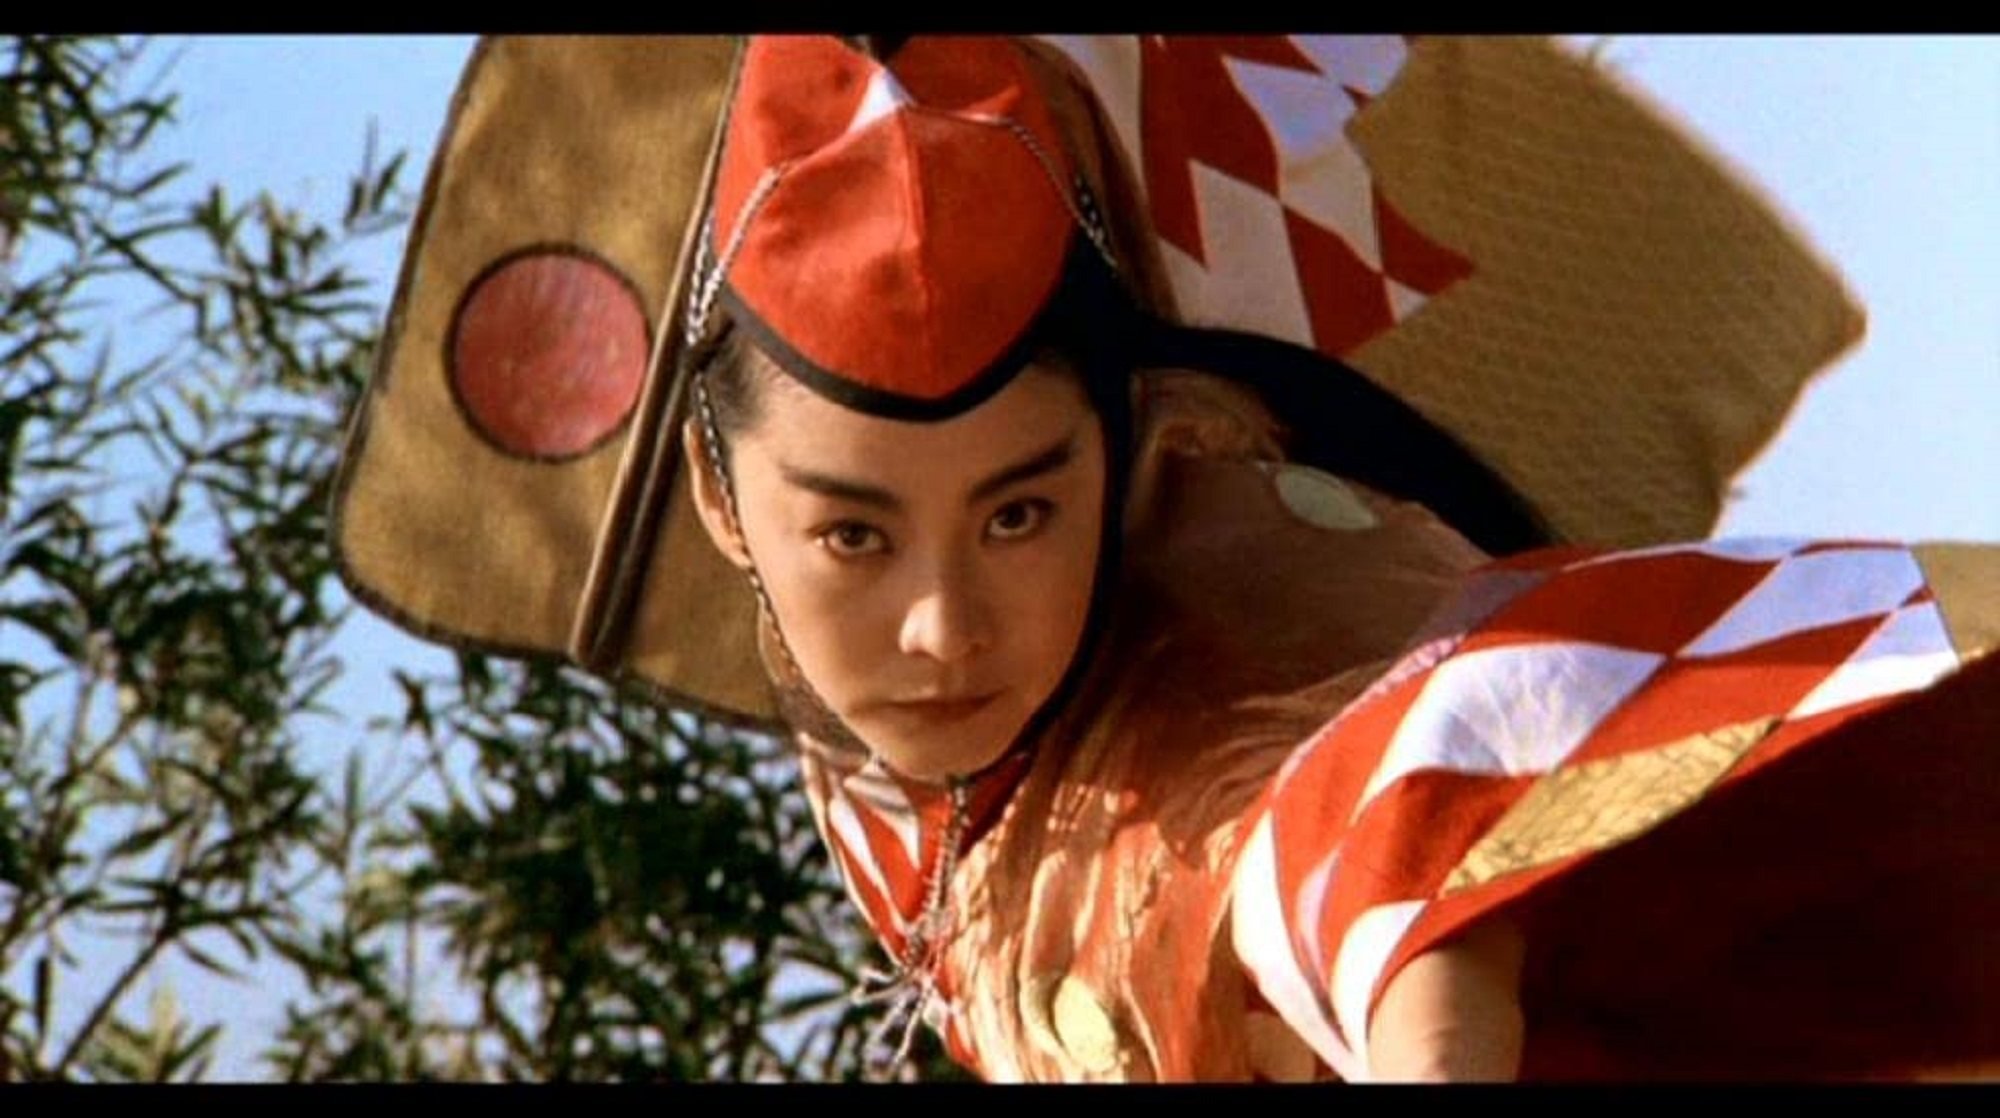 Brigitte Lin in a still from Swordsman II.